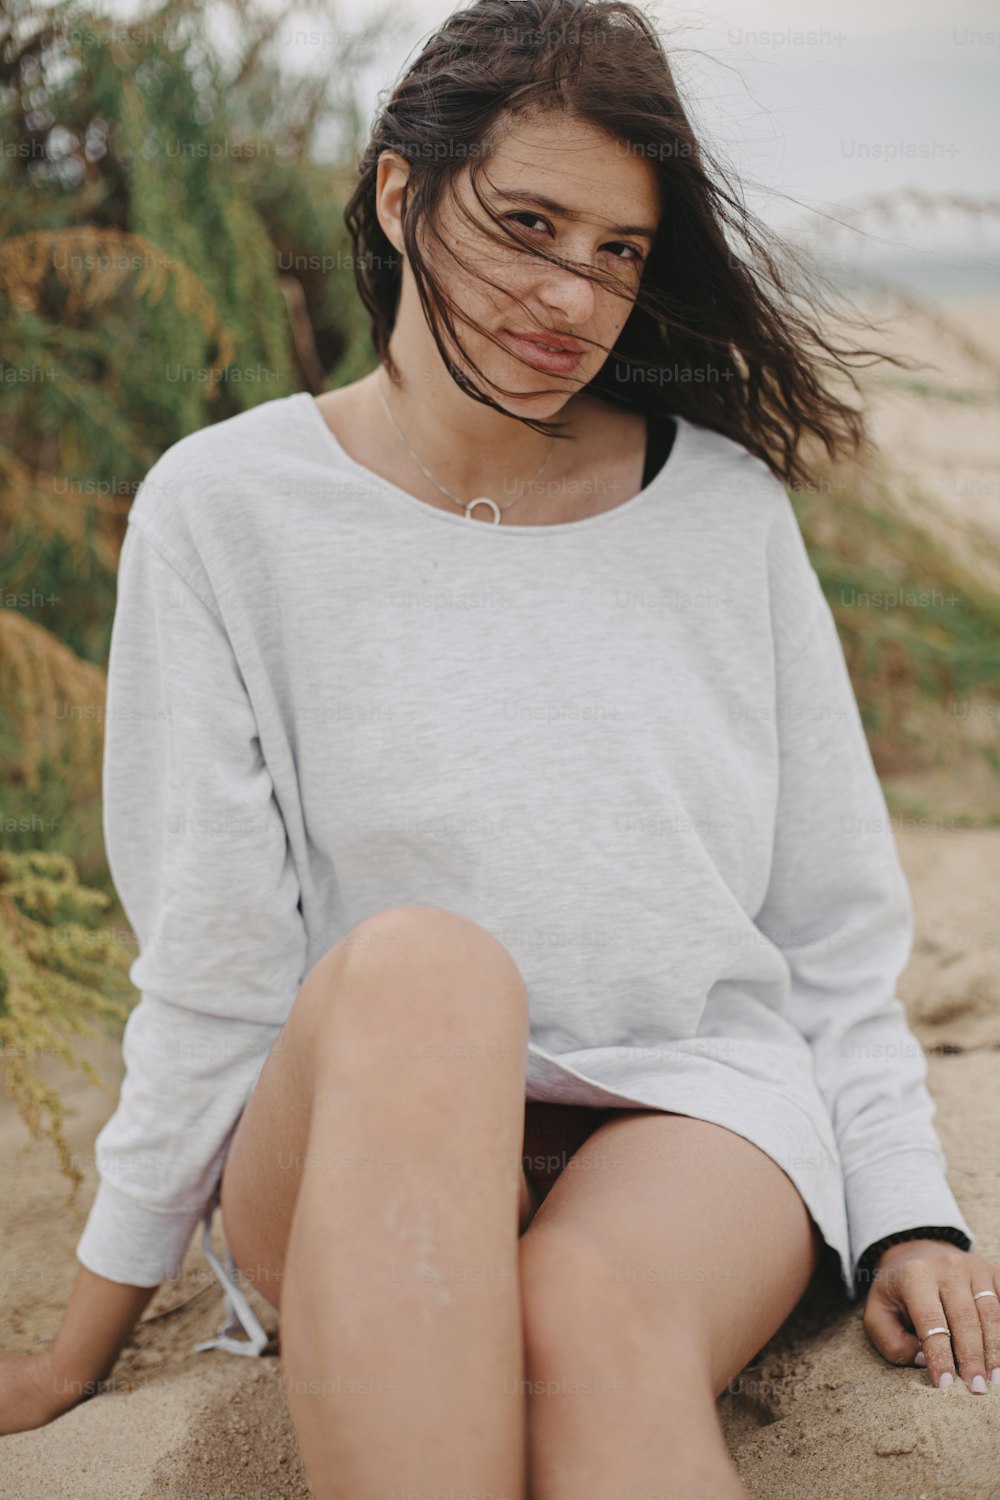 바람이 부는 머리카락과 스웨터를 입고 푸른 잔디와 바다를 배경으로 모래 해변에 앉아 고요한 순간을 가진 아름다운 평온한 여성. 해안에서 휴식을 취하는 세련된 젊은 여성. 휴가 분위기